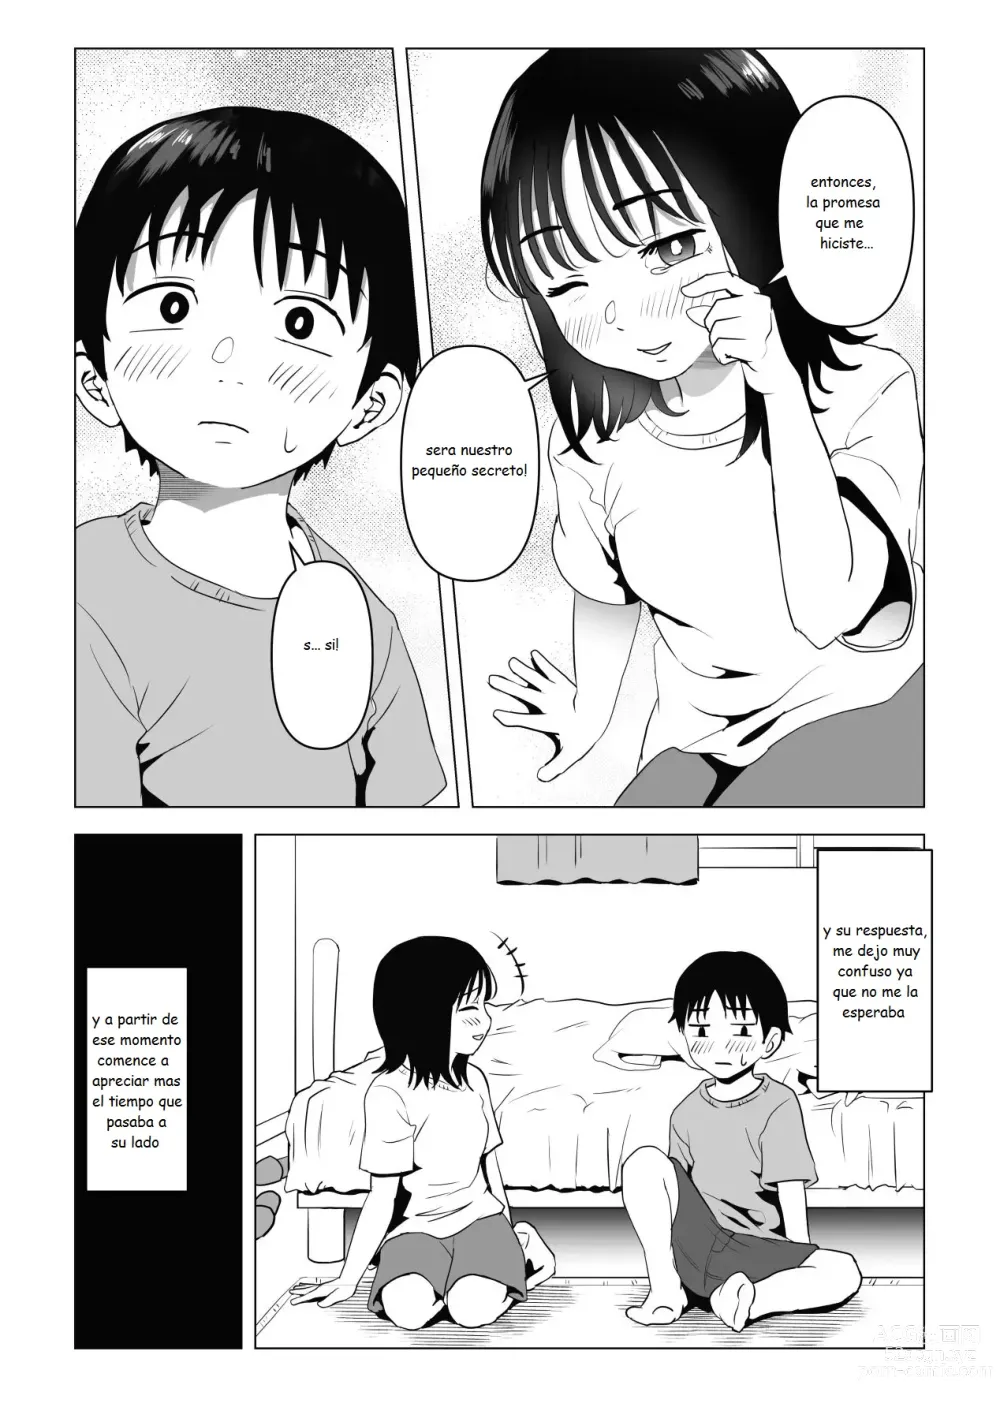 Page 10 of doujinshi Mi amiga de la infancia de grandes pechos y mi hermano se han estado conportado raro ultimamente